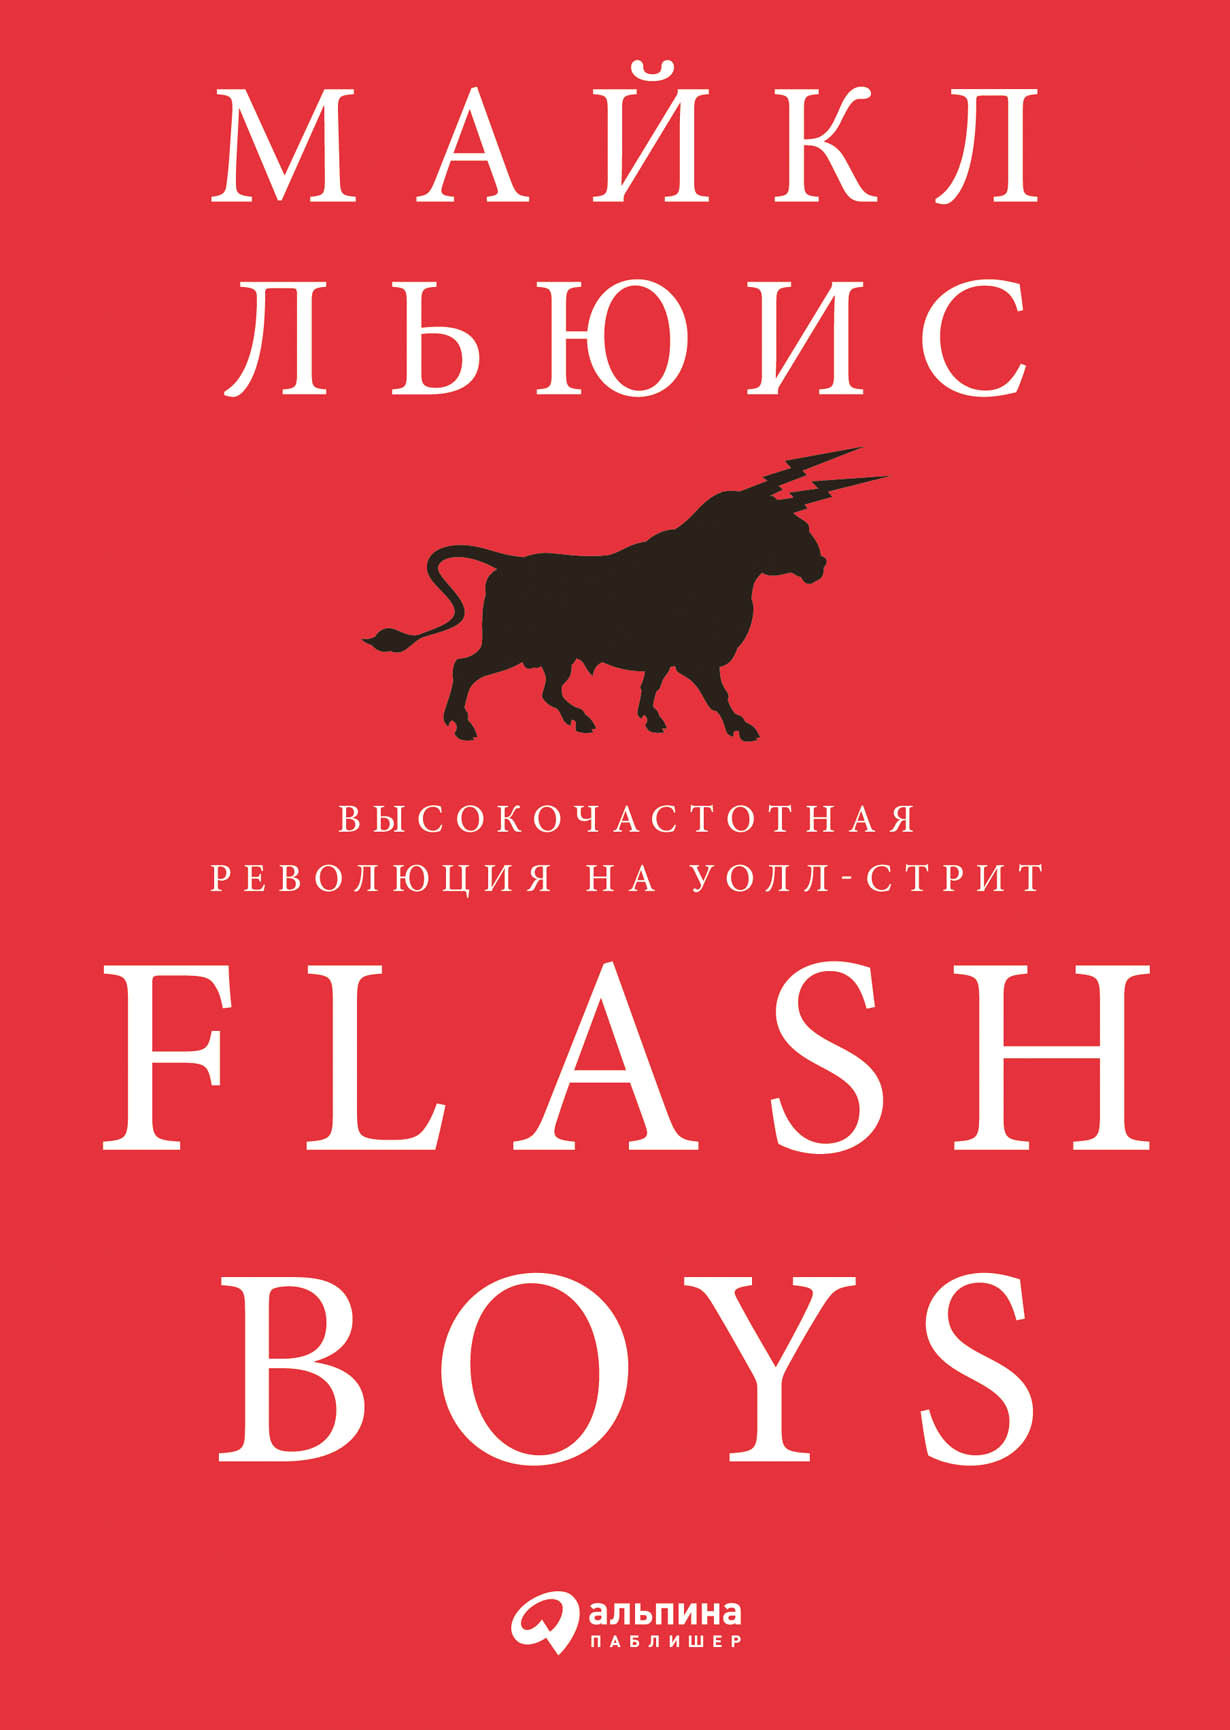 Flash Boys обложка.